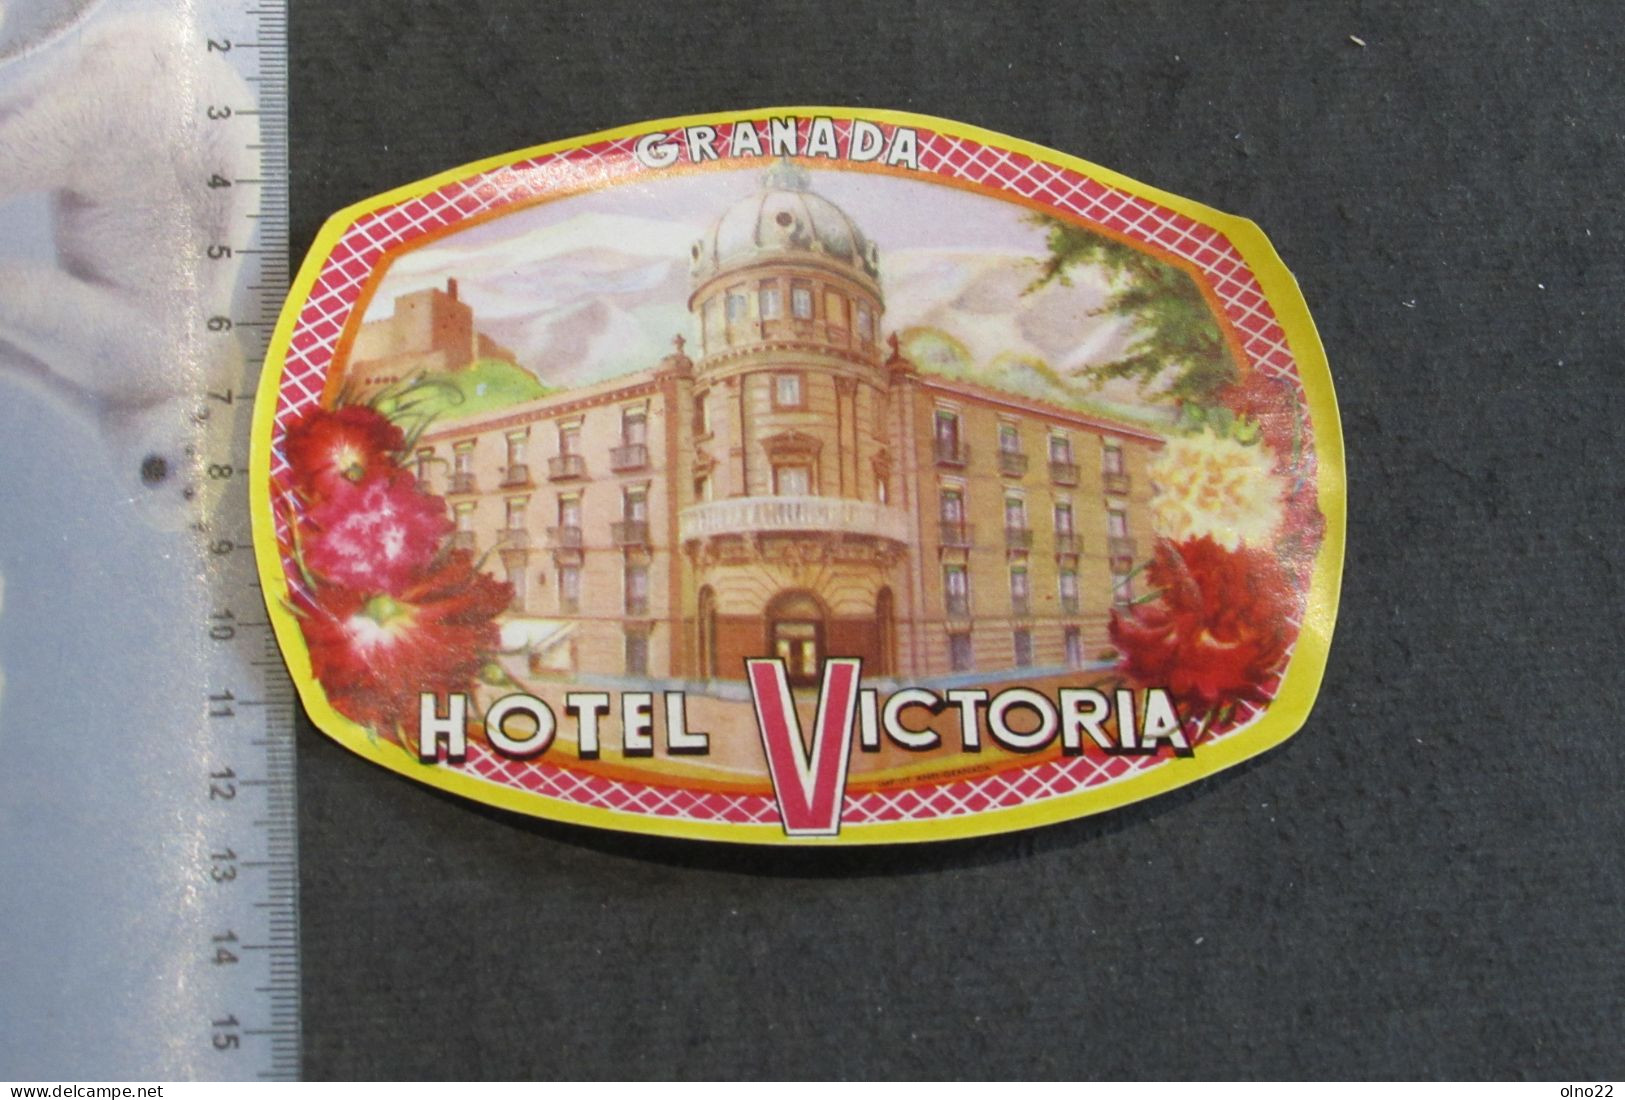 GRANADA - HOTEL VICTORIA  - - Etiquettes D'hotels